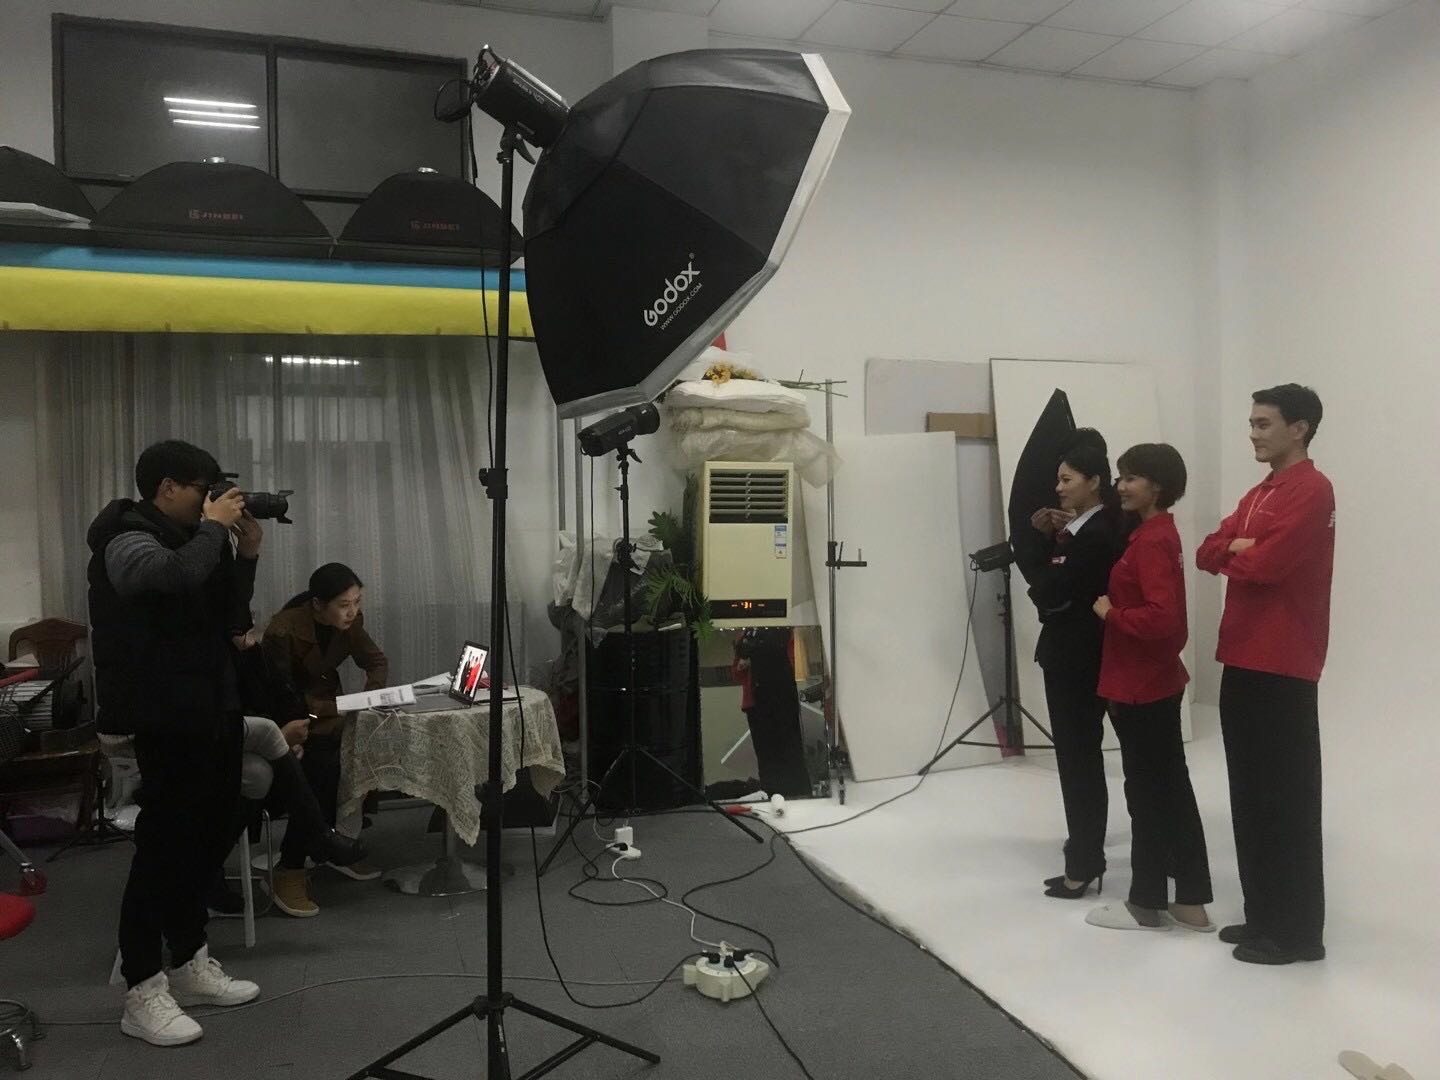 京东五星电器品牌视觉平面广告摄影作品出街案例-南京专业广告摄影公司-如一摄影(图5)